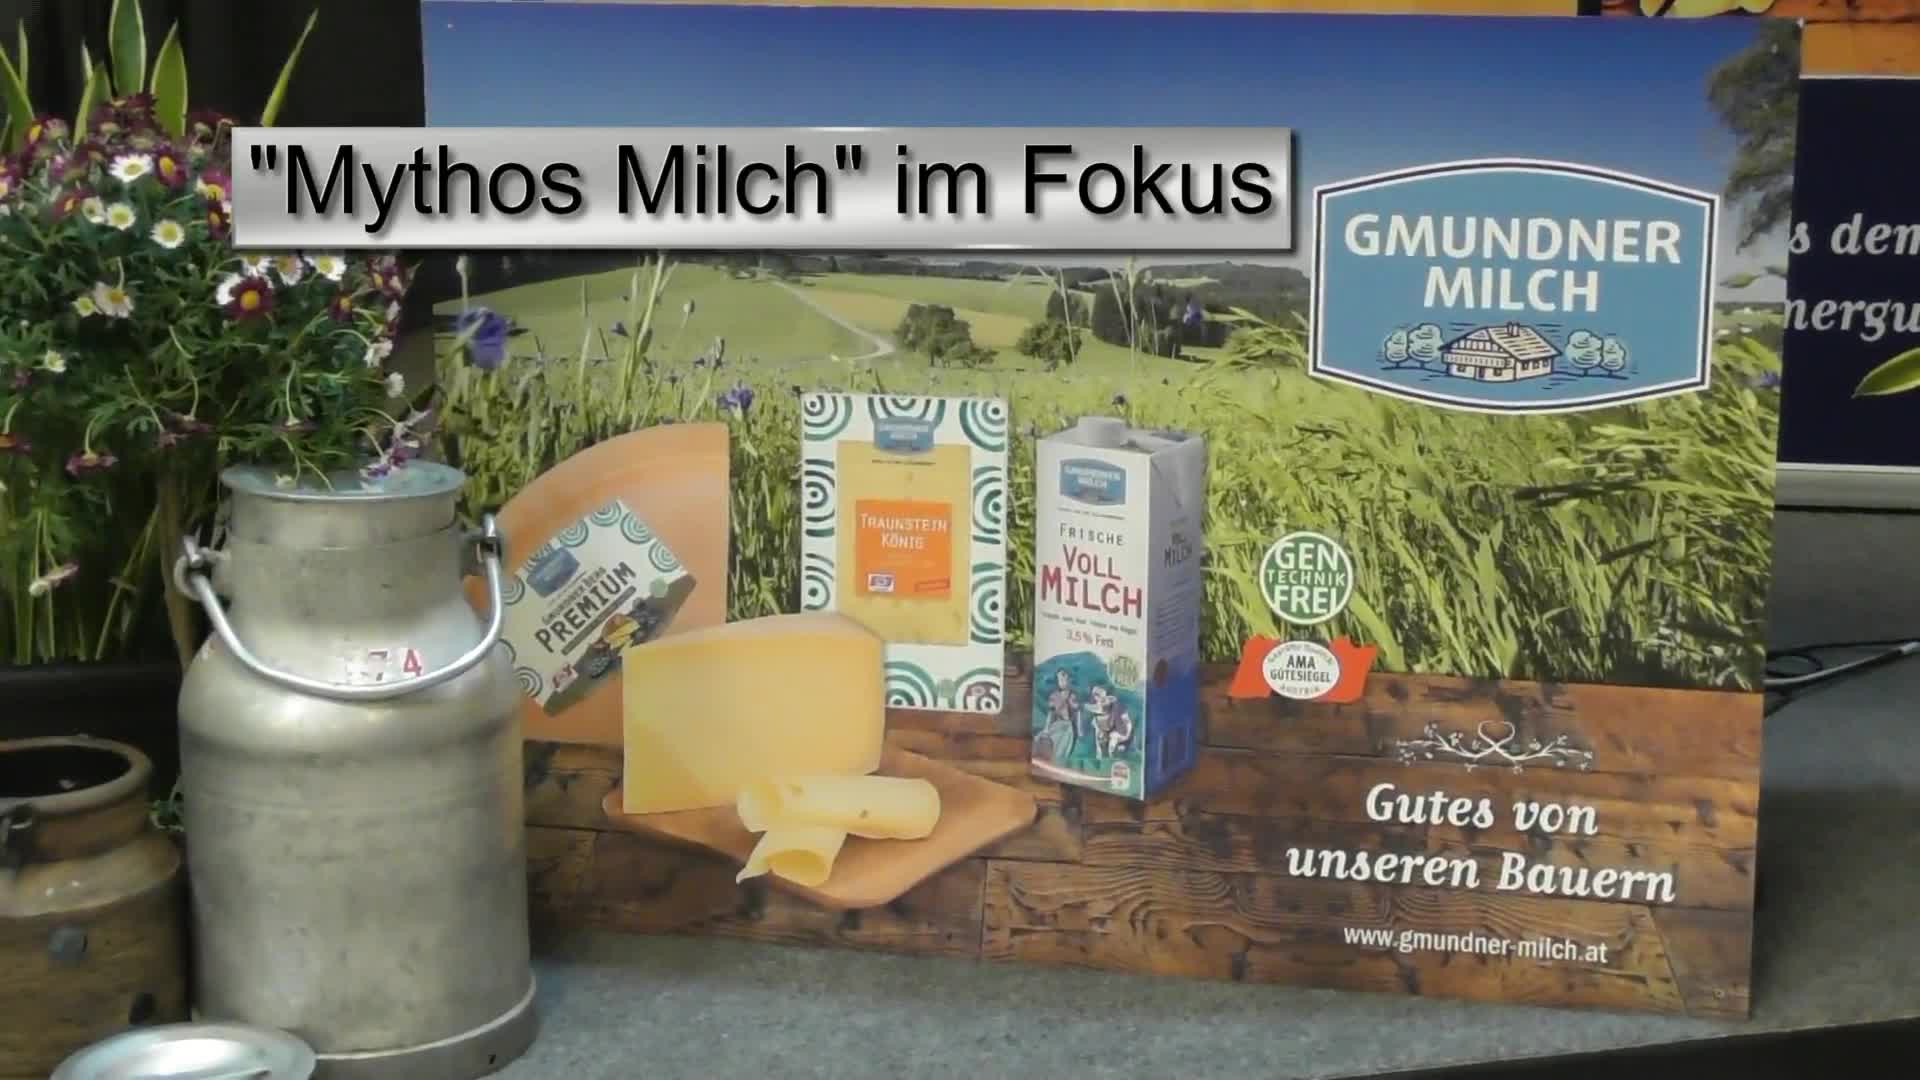 Mythos Milch im Fokus